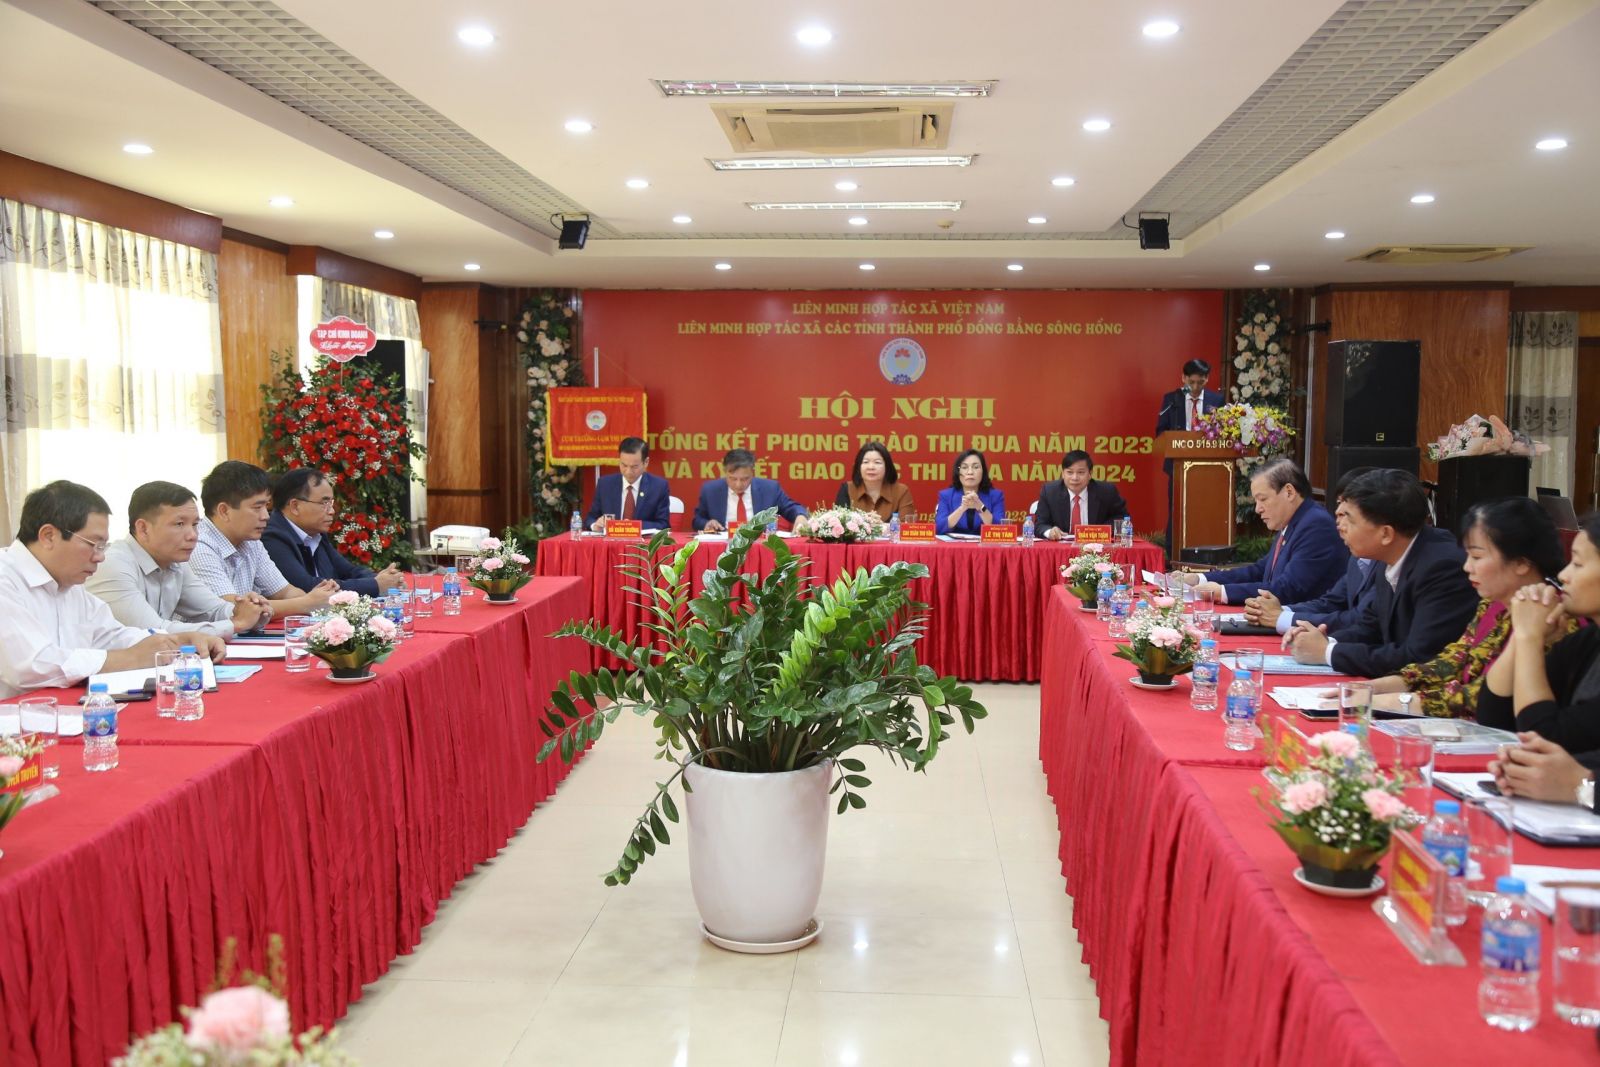 Liên minh Hợp tác xã các tỉnh, thành phố trong Cụm Đồng bằng sông Hồng tổng kết phong trào thi đua năm 2023 và ký kết giao ước thi đua năm 2024